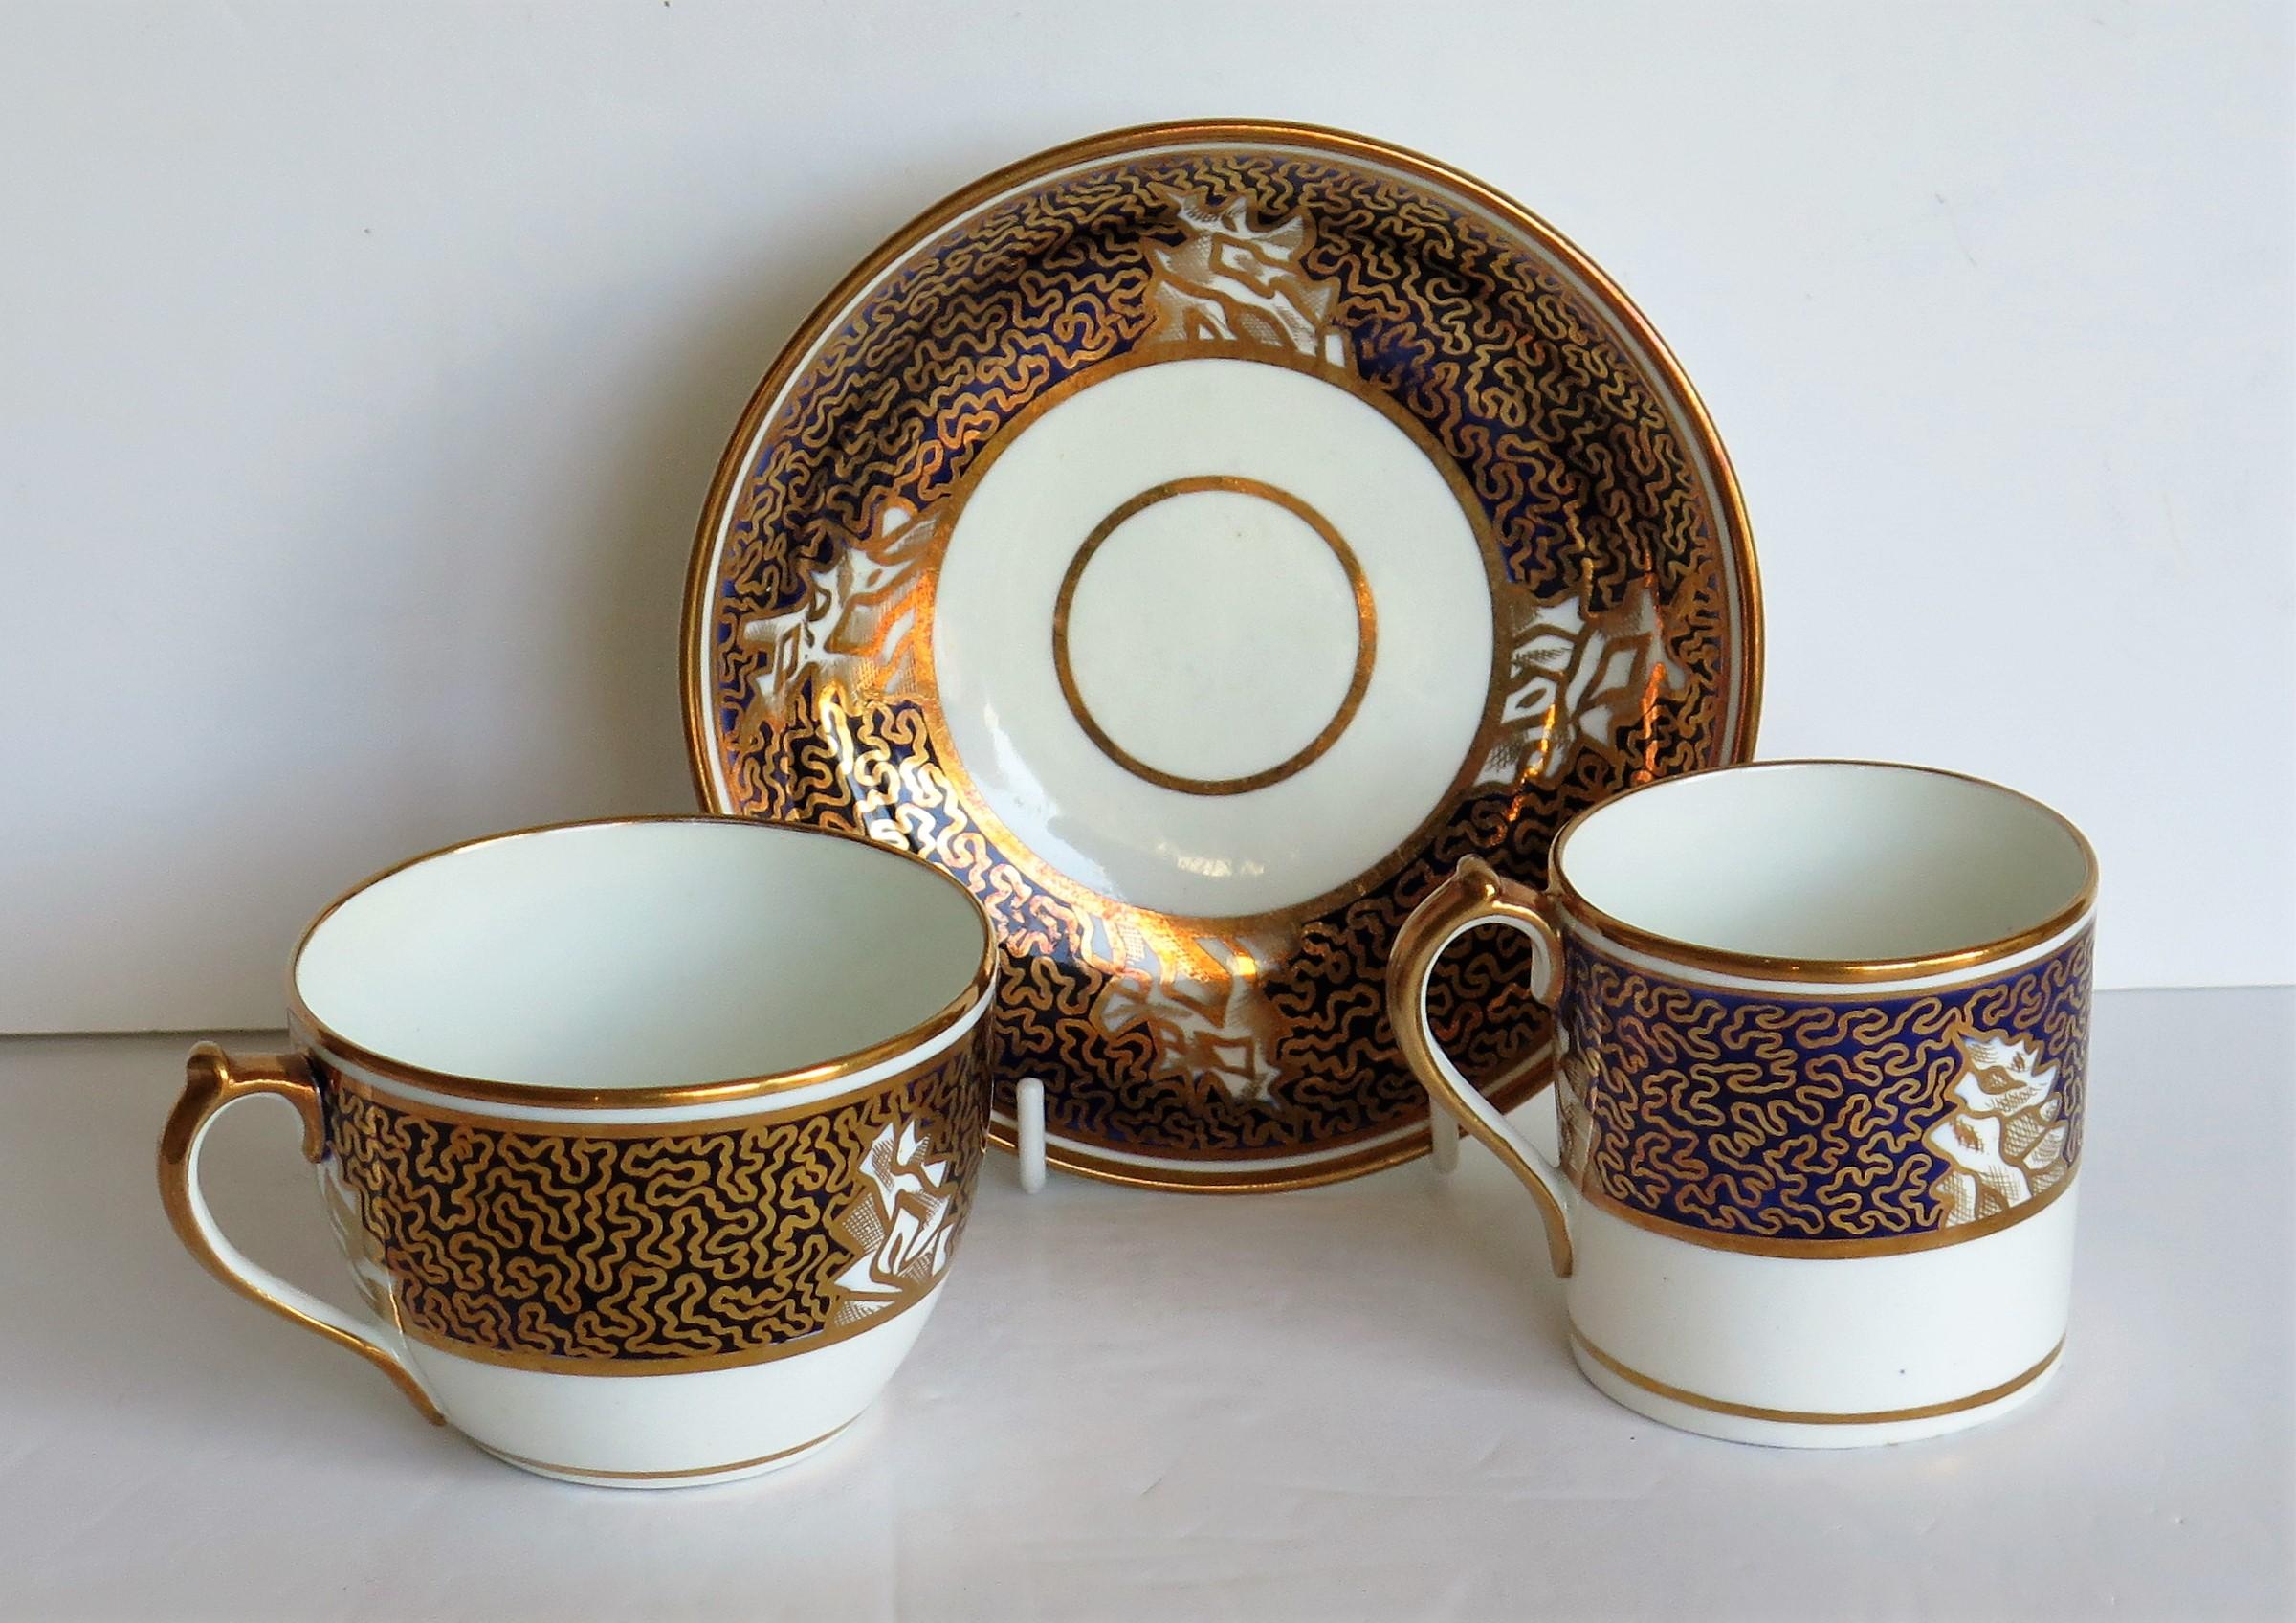 Il s'agit d'un trio en porcelaine bleue et dorée comprenant une tasse à café, une tasse à thé et une soucoupe du modèle numéro 470 réalisé par Miles Mason (Mason's), Staffordshire Potteries, au début de la période George 111 du XIXe siècle, vers